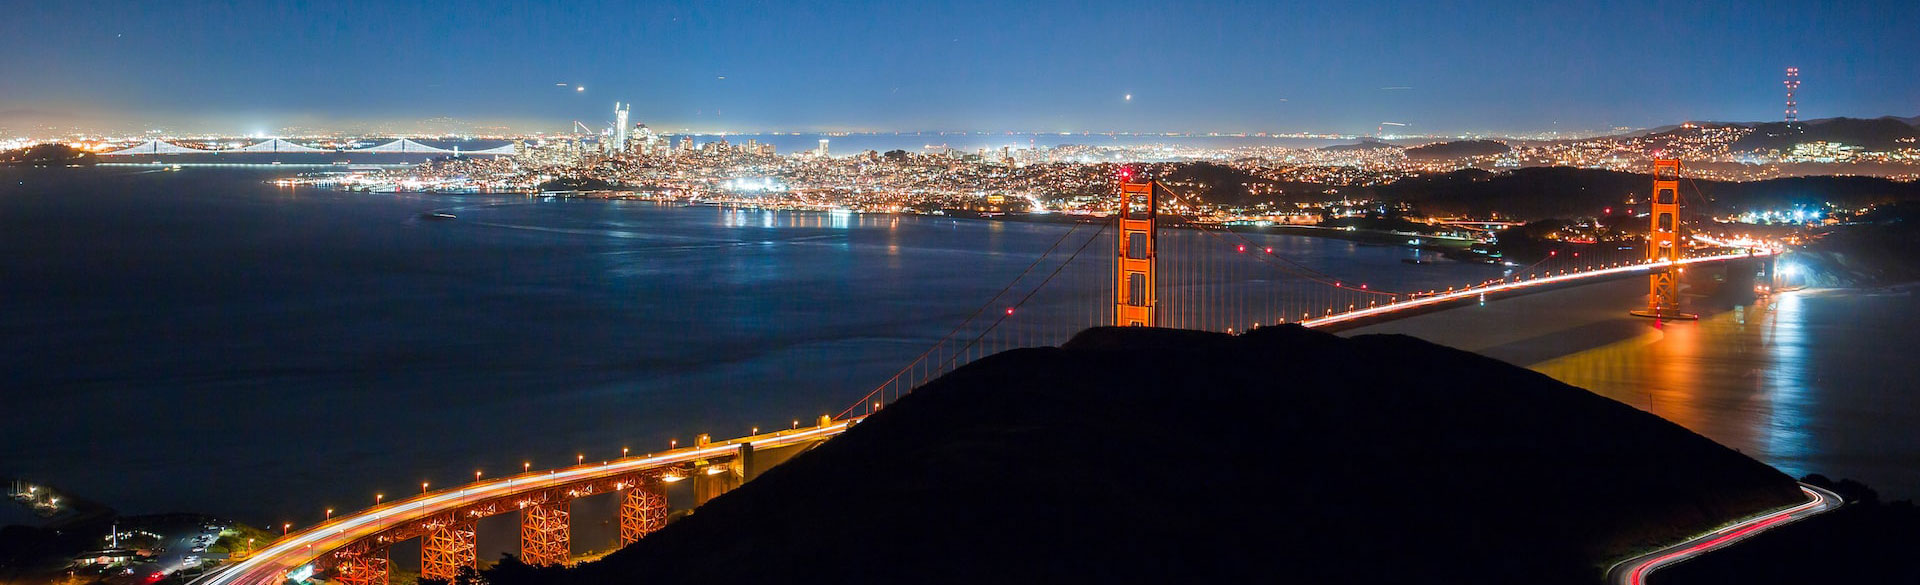 San Francisco Bay and Golden Gate Bridge at night